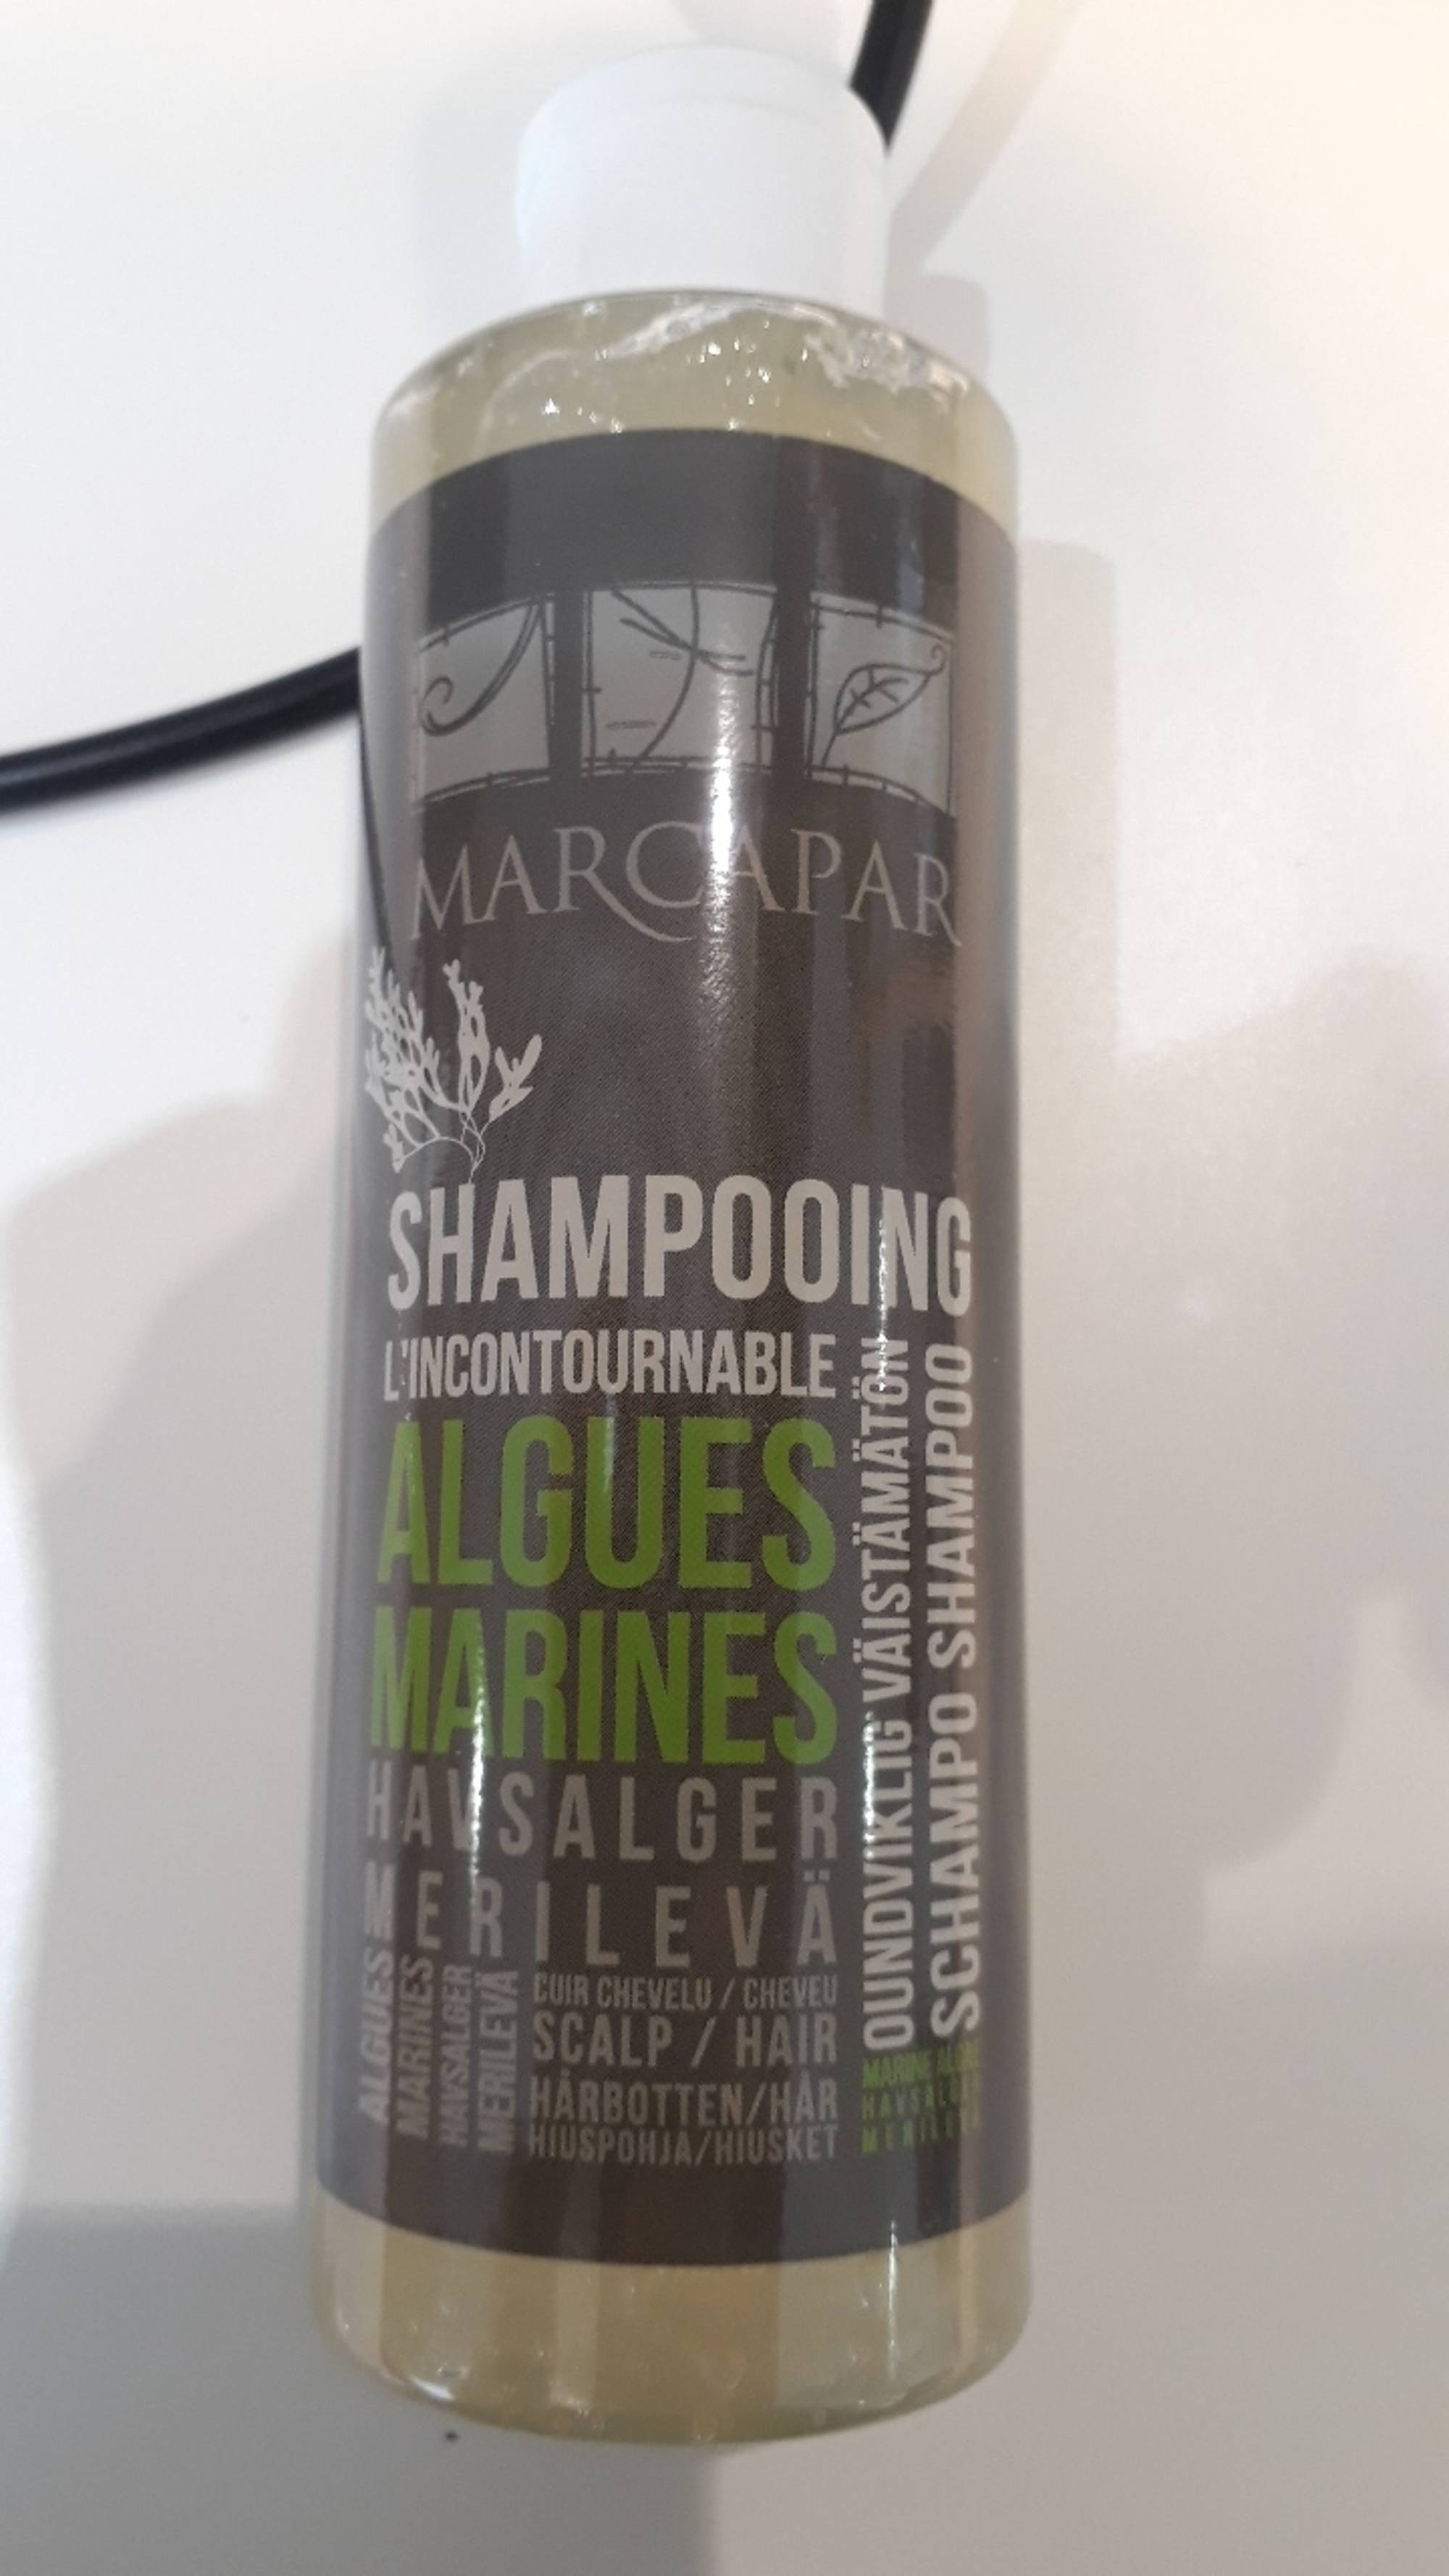 MARCAPAR - Shampooing L'incontournable - Algues marines